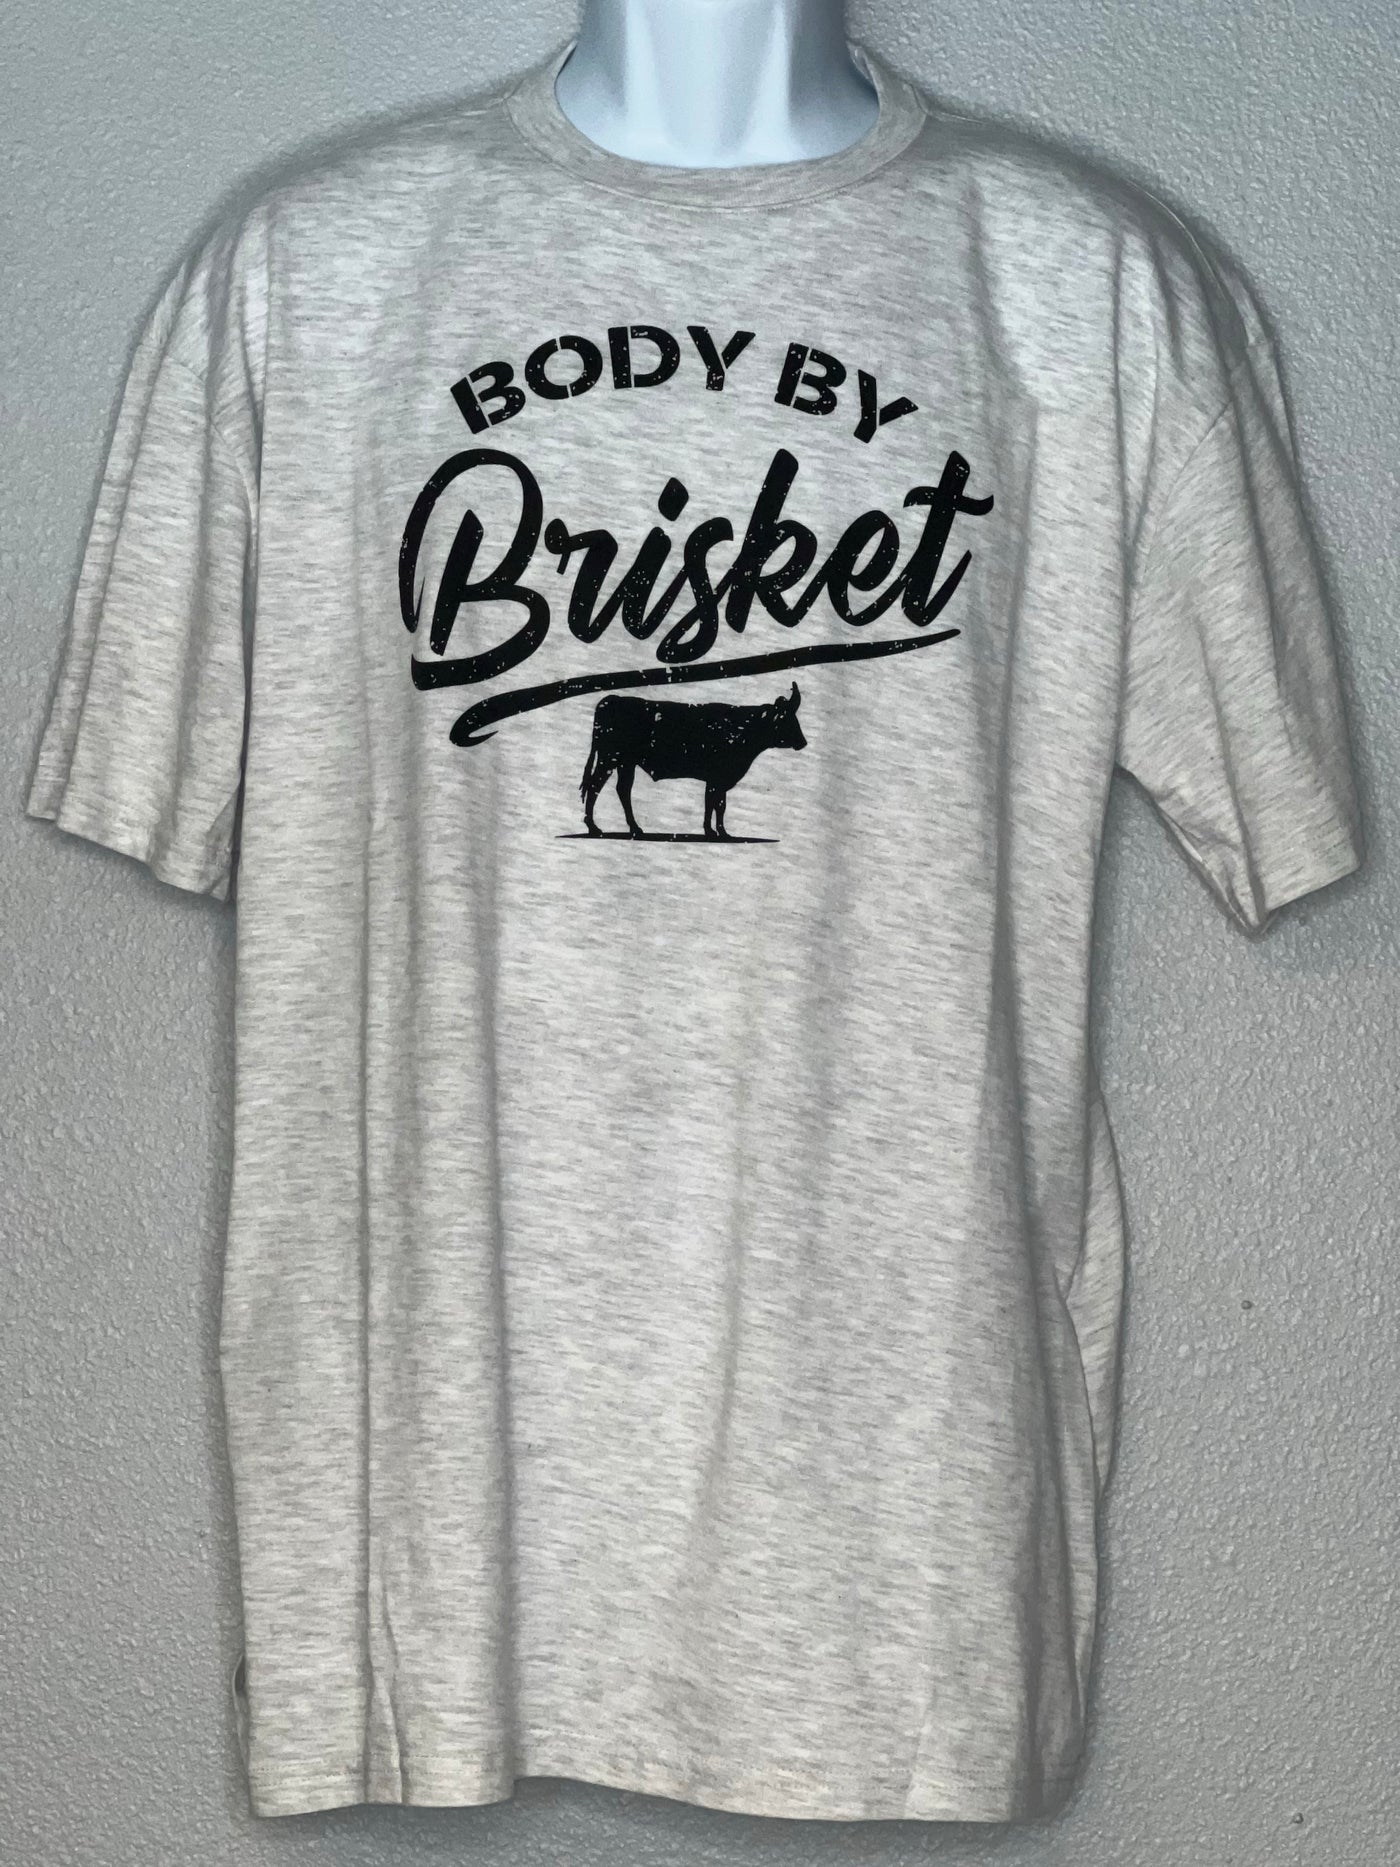 Unisex Grey Body By Brisket Short Sleeve Shirt